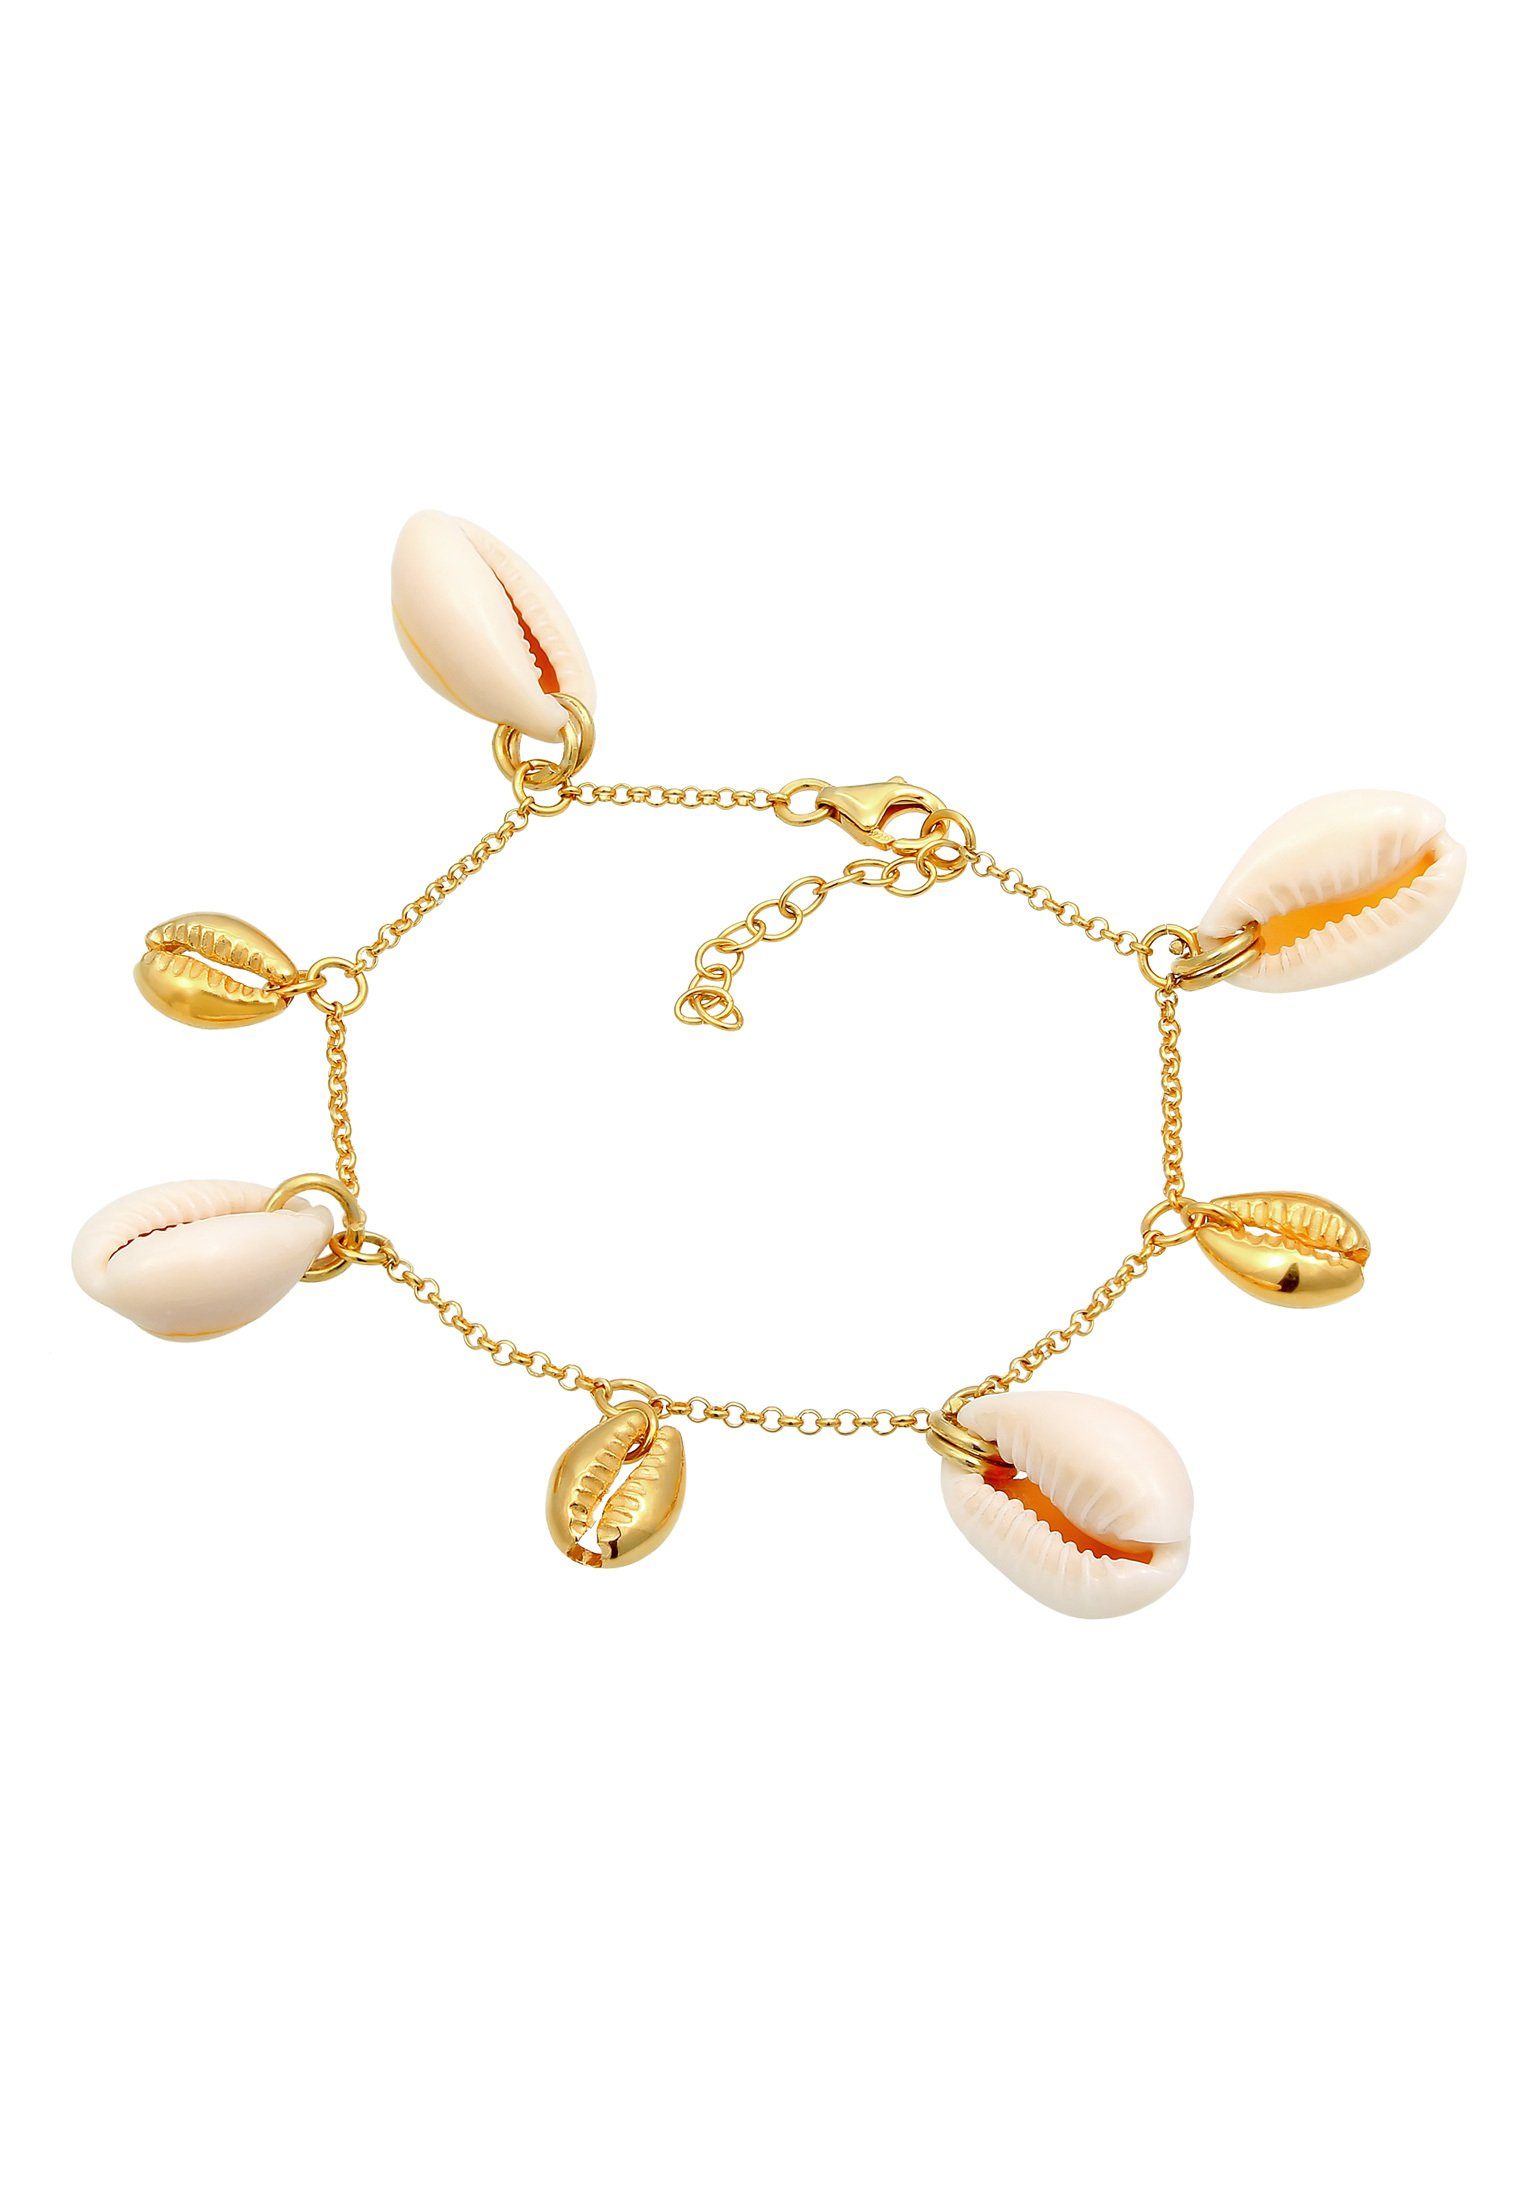 In gefertigt Kauri vergoldet, Elli Silber Juwelier-Qualität Sommer Echte Muscheln 925 Armband sehr hochwertiger